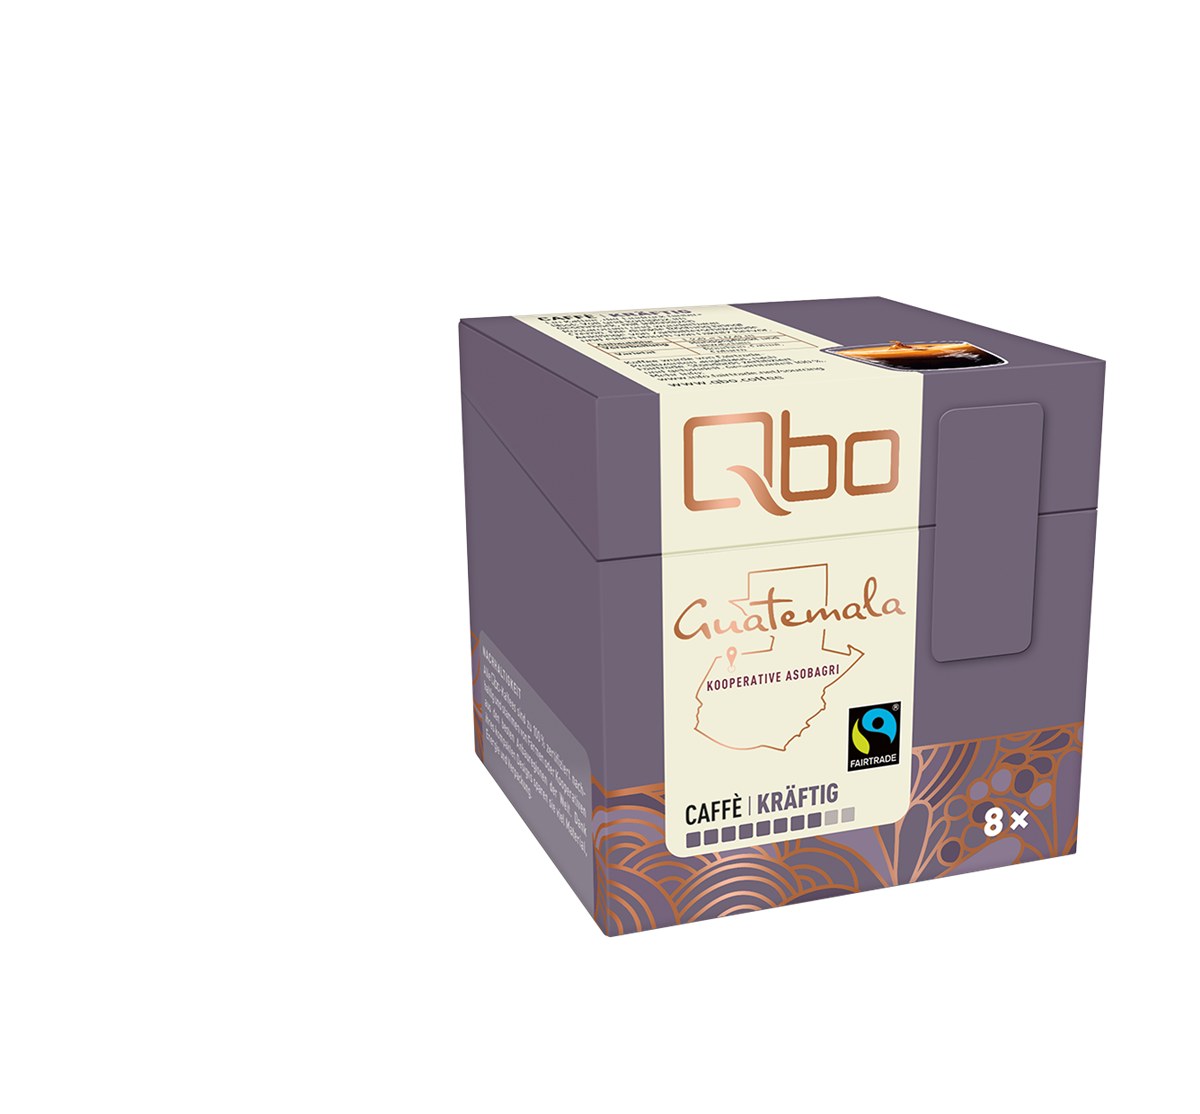 Qbo Limited Edition Guatemala_Caffè kraeftig